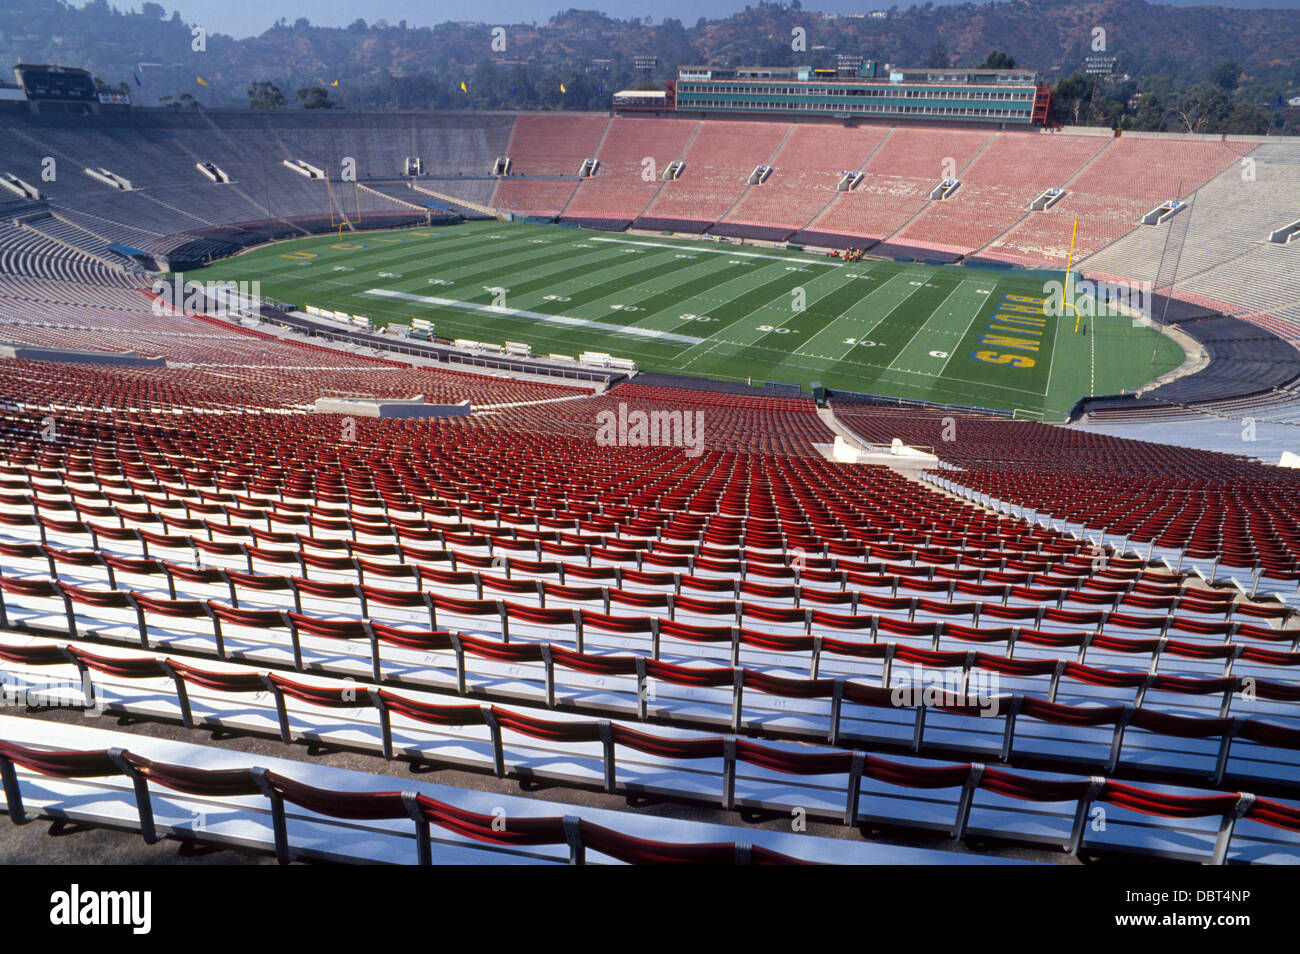 Uno dei più noti gli stadi di atletica negli Stati Uniti è il Rose Bowl a Pasadena, in California, sito del collegio annuale del gioco del calcio con lo stesso nome Foto Stock